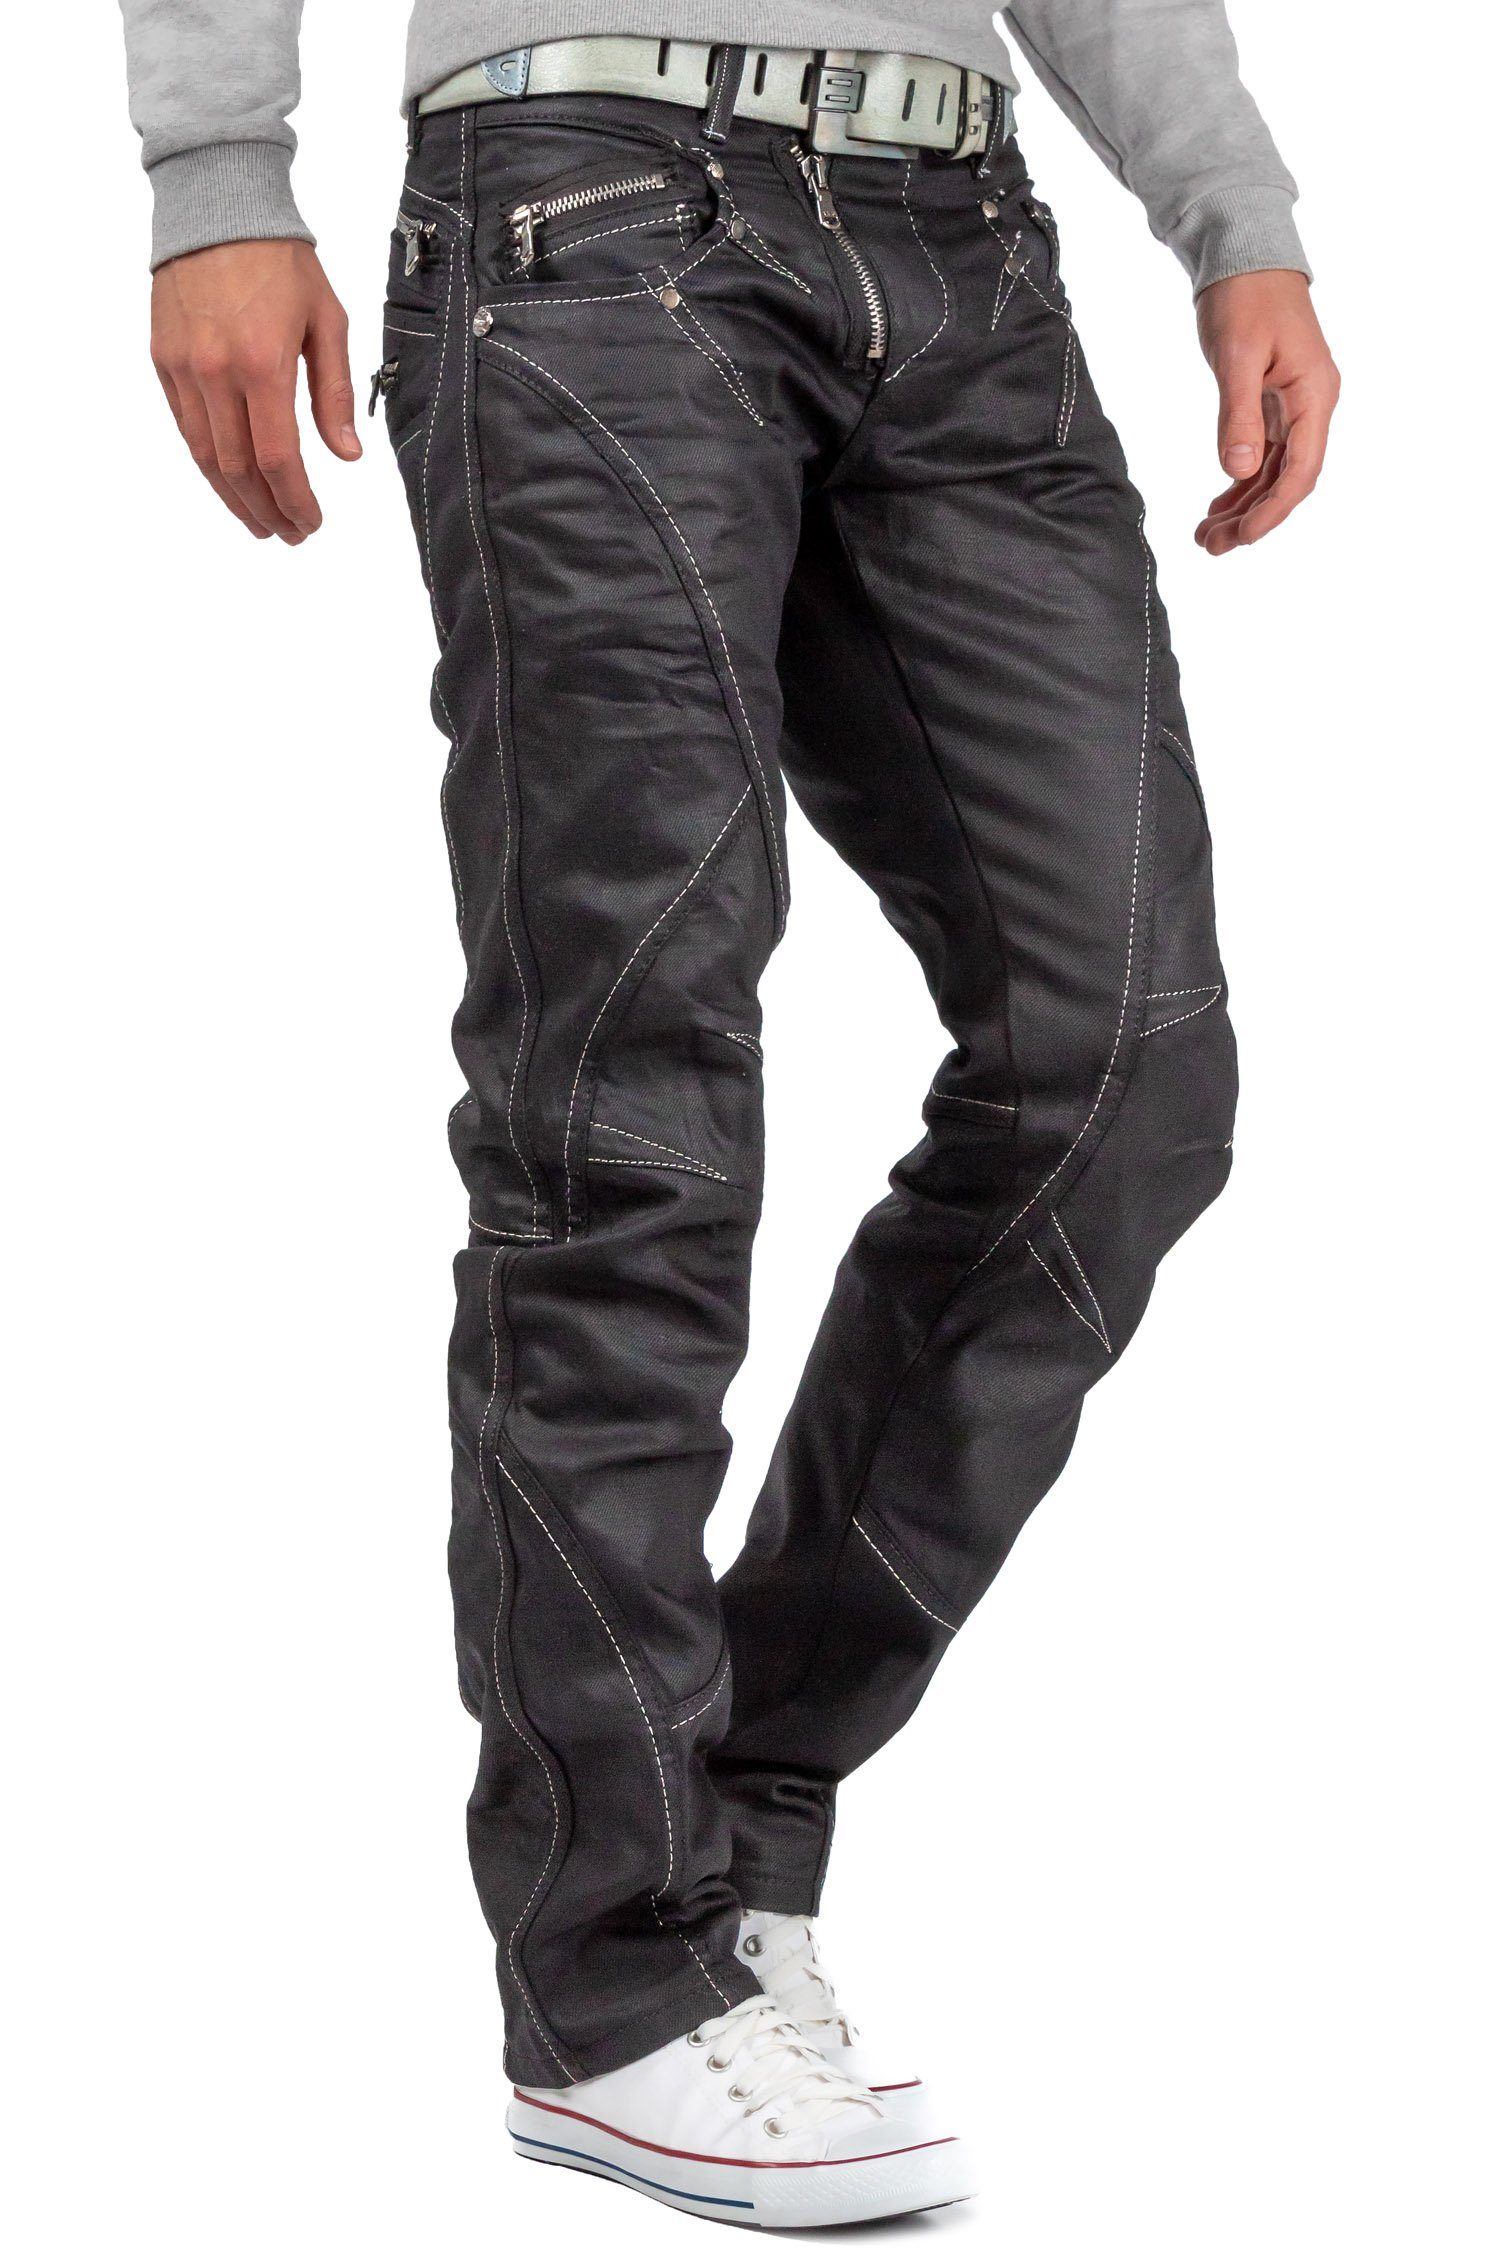 weißen BA-C0812 5-Pocket-Jeans Baxx Schwarz Hose & Nähten mit Glänzend Cipo in